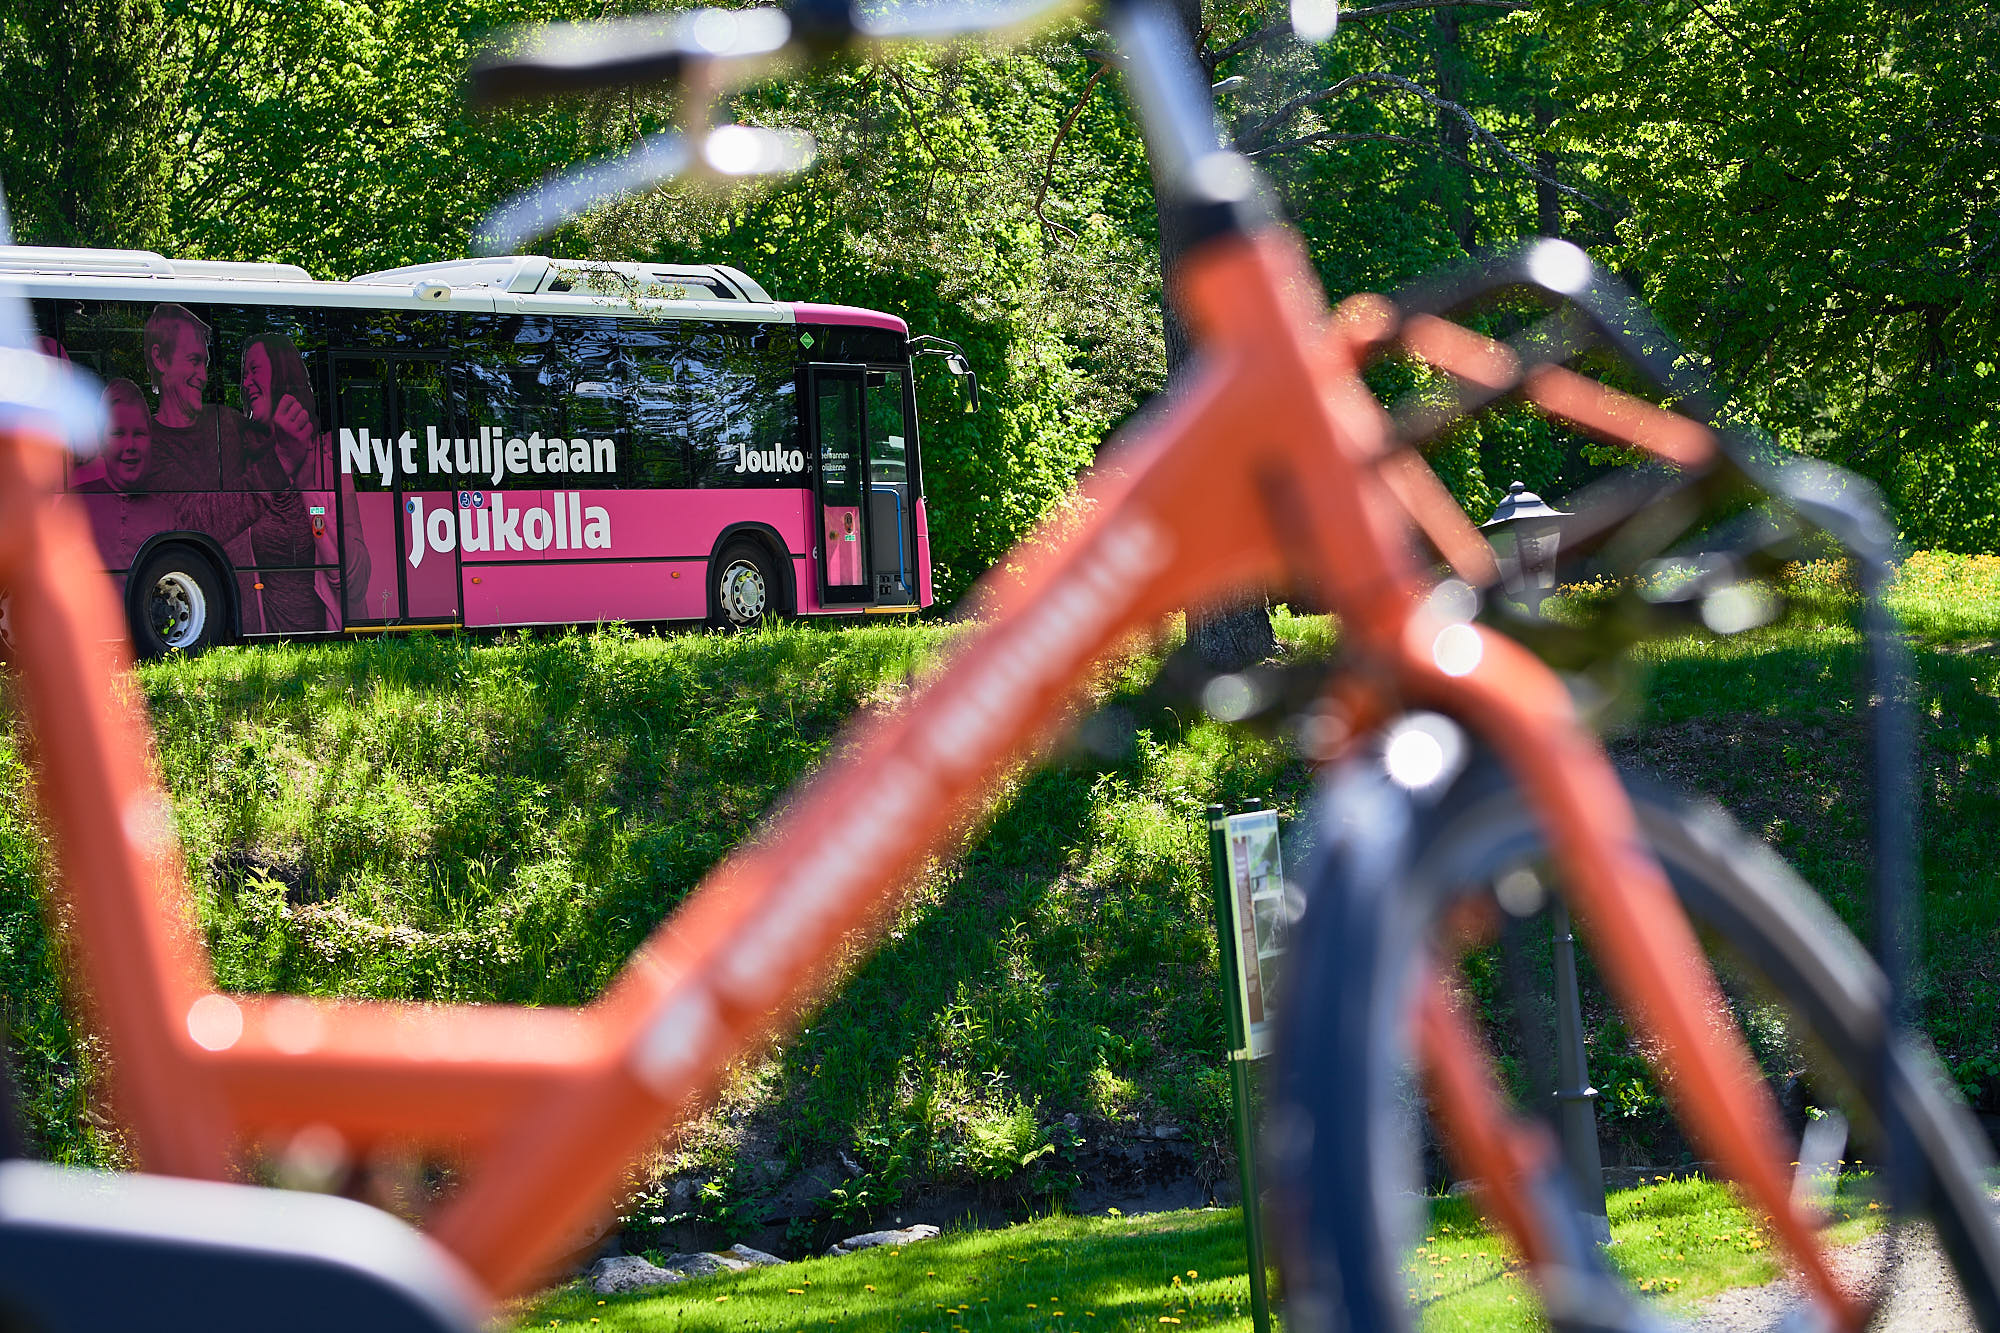 Etualalla oranssi pyörä, taustalla pinkki Jouko-bussi, jossa lukee ”Nyt kuljetaan Joukolla”.